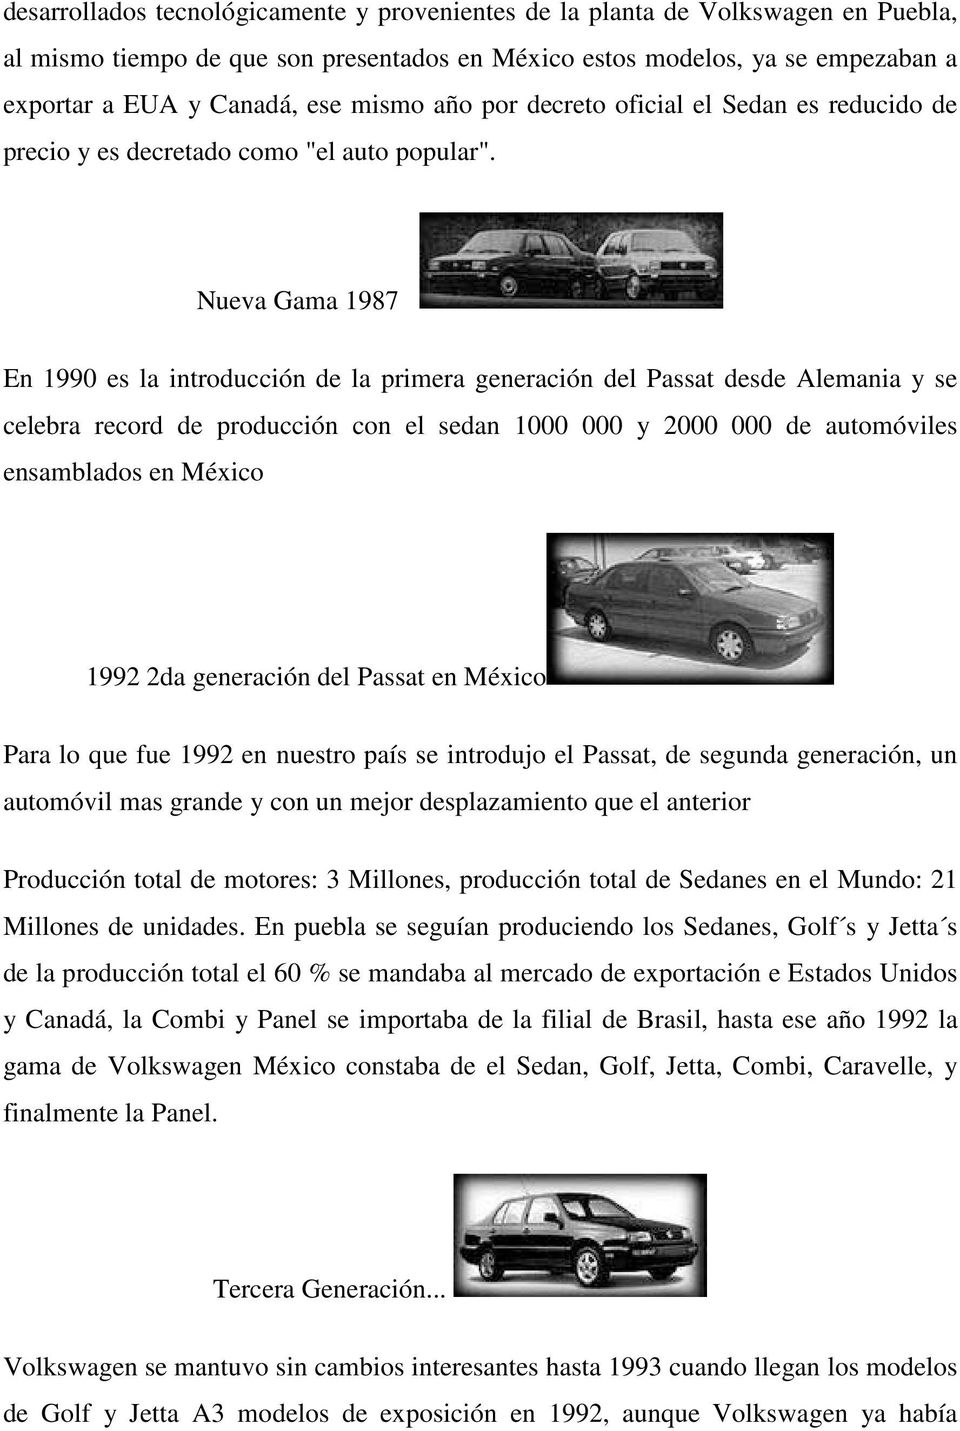 Nueva Gama 1987 En 1990 es la introducción de la primera generación del Passat desde Alemania y se celebra record de producción con el sedan 1000 000 y 2000 000 de automóviles ensamblados en México